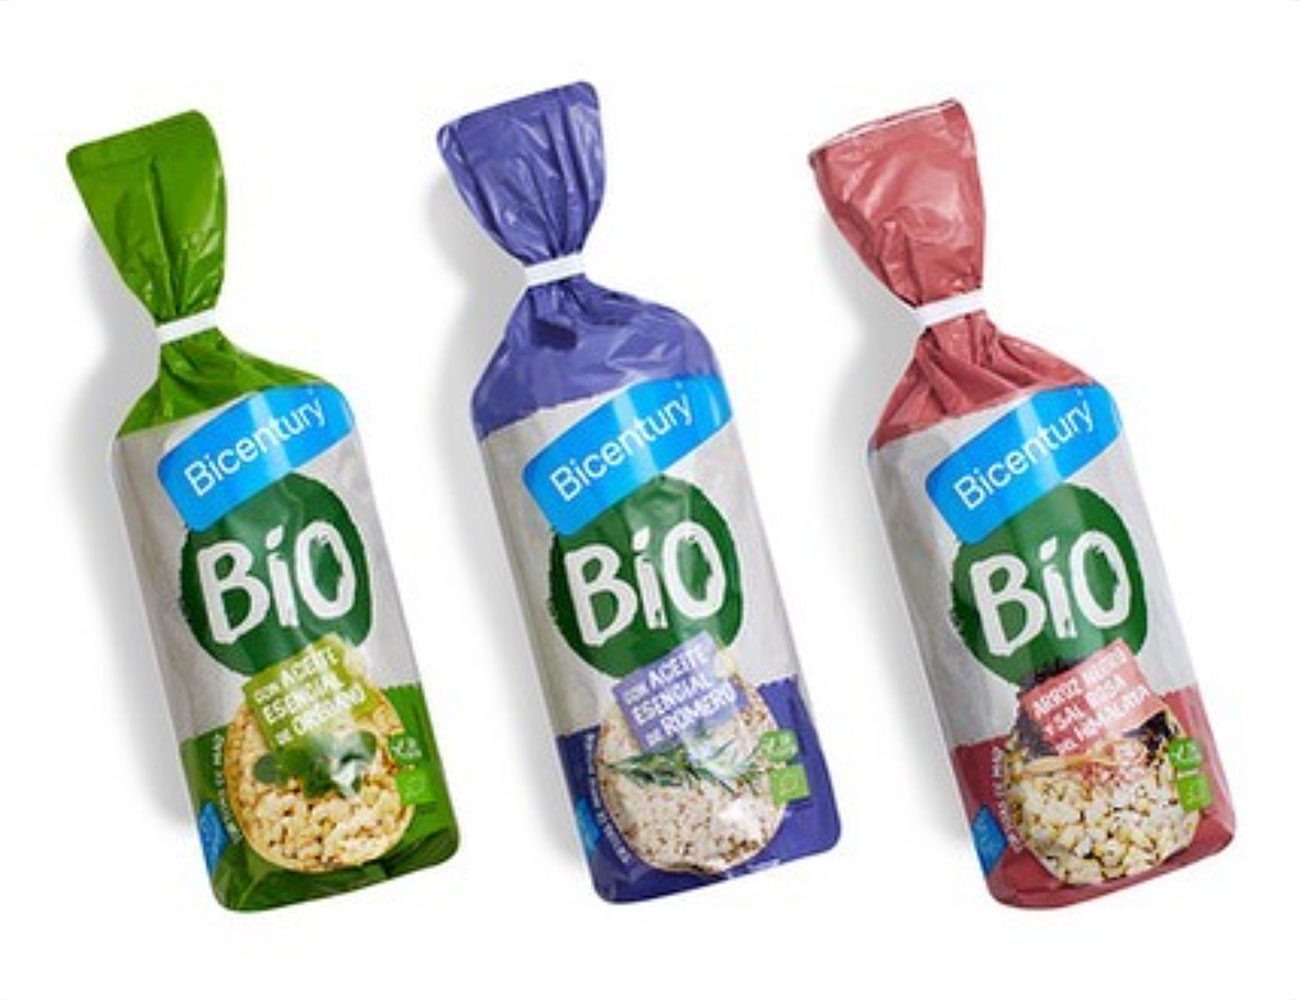 Bicentury packaging tortitas bio by More Amor Brands